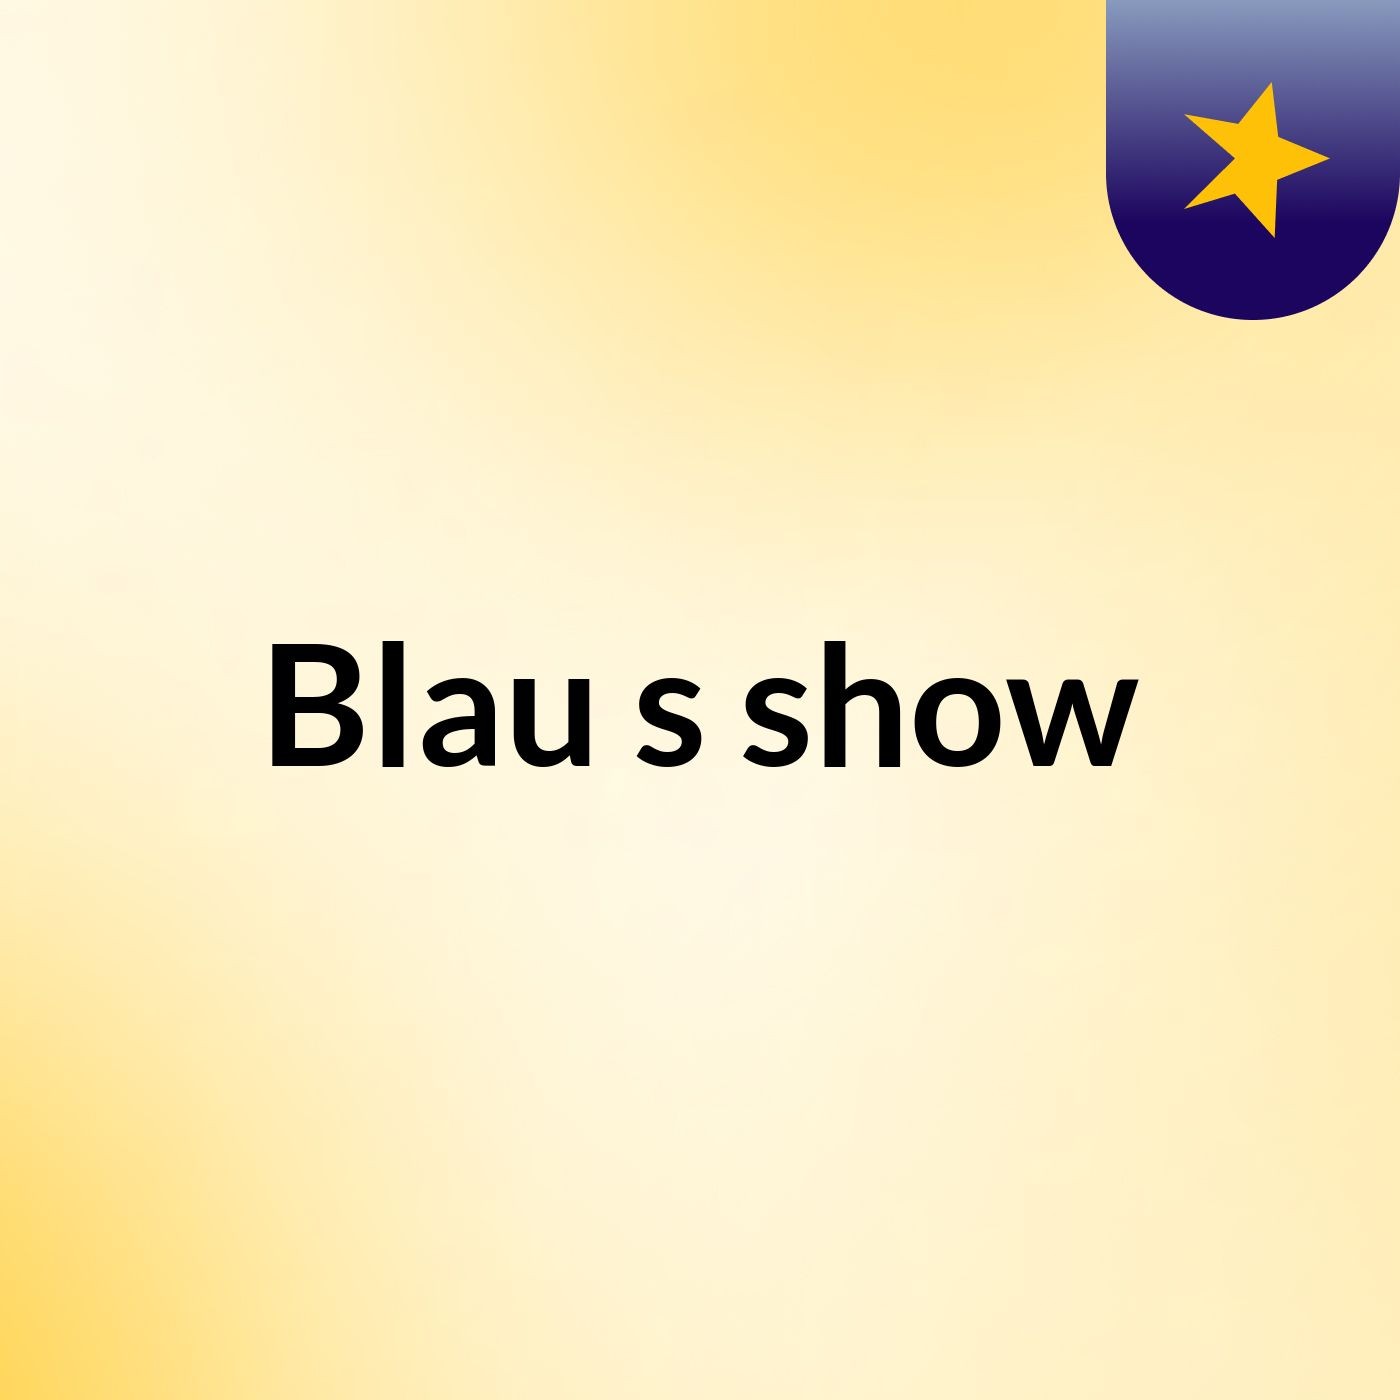 Blau's show